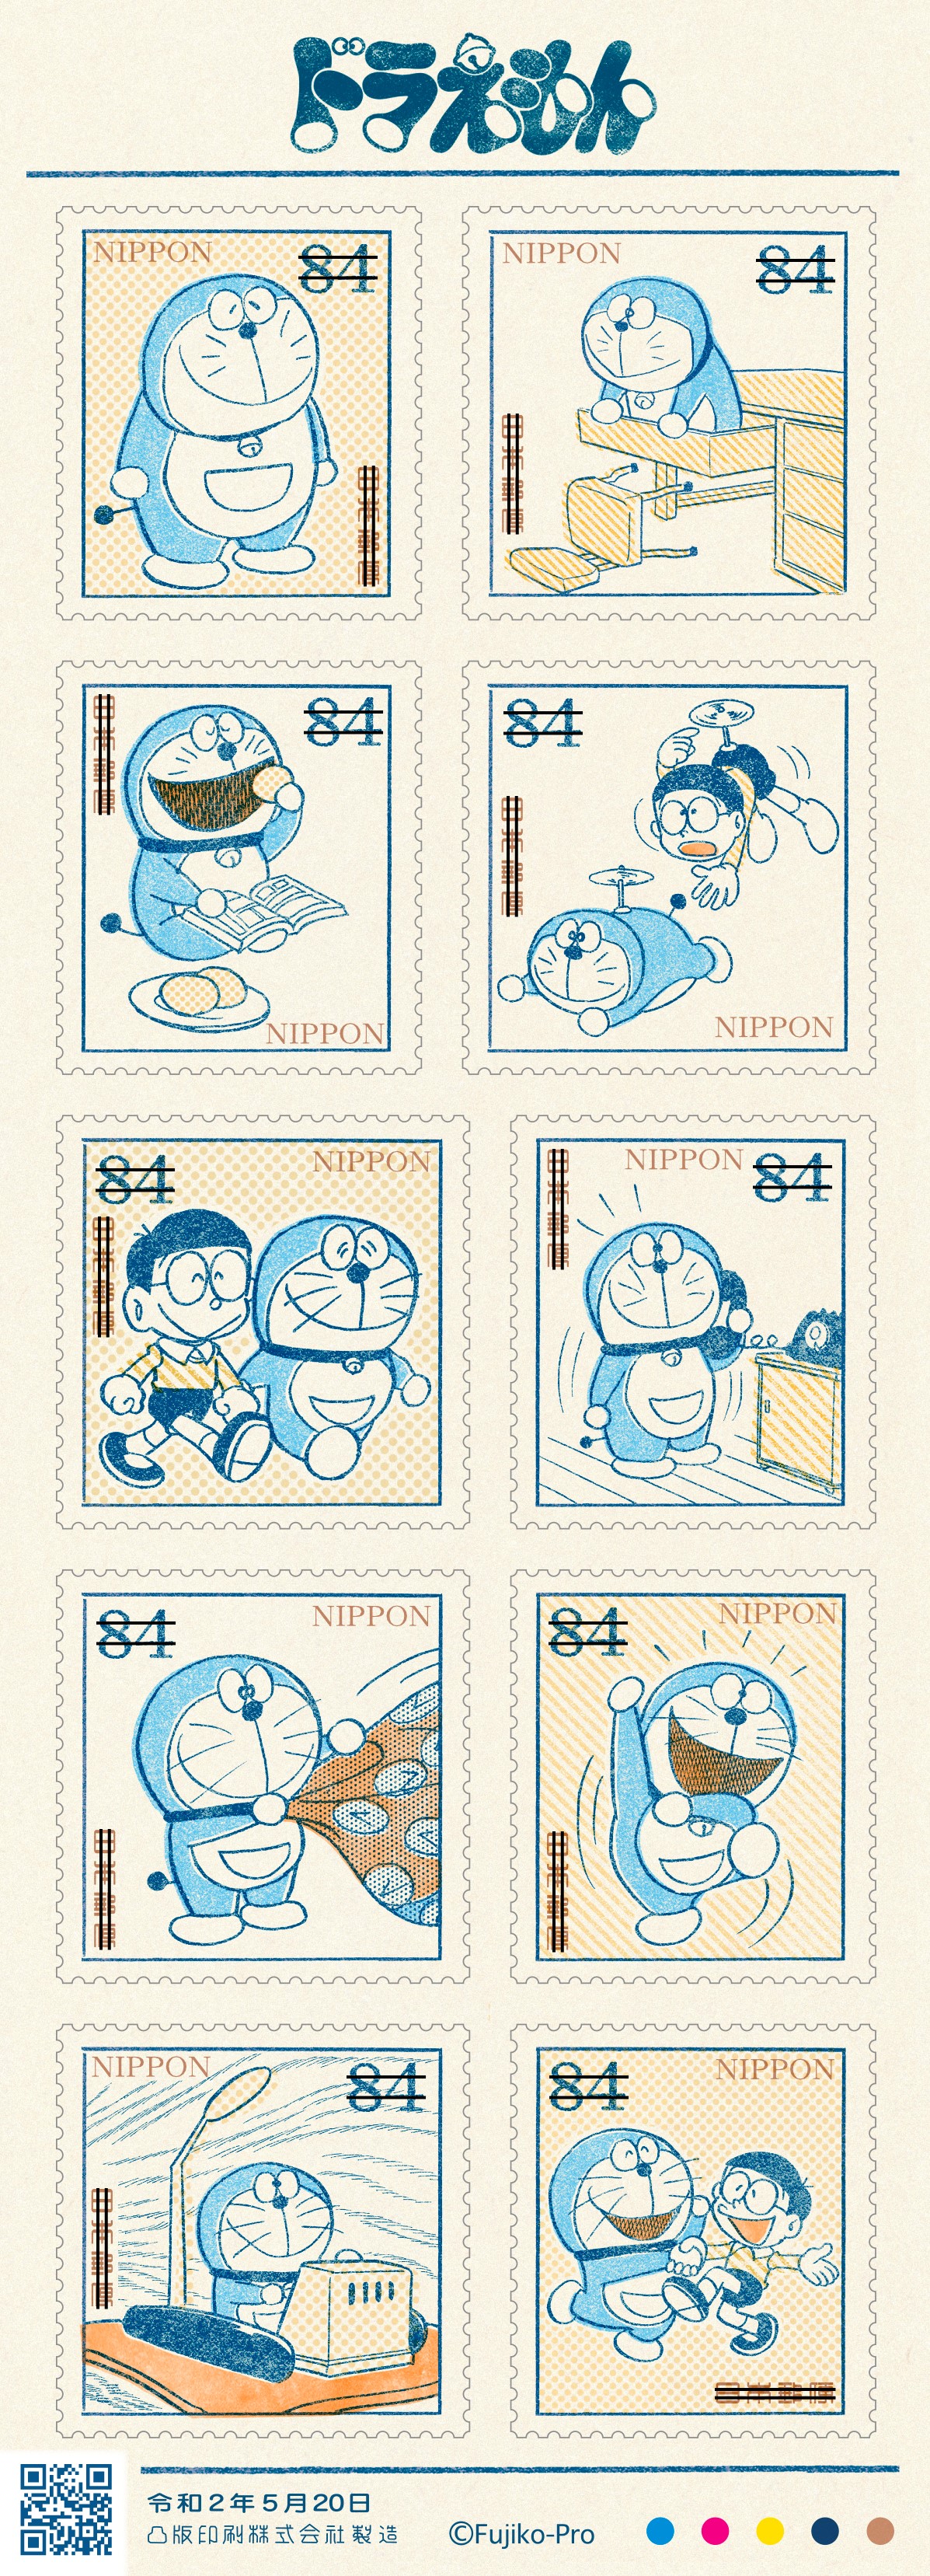 年は ドラえもん 50周年 郵便切手の発売も見逃せないよ